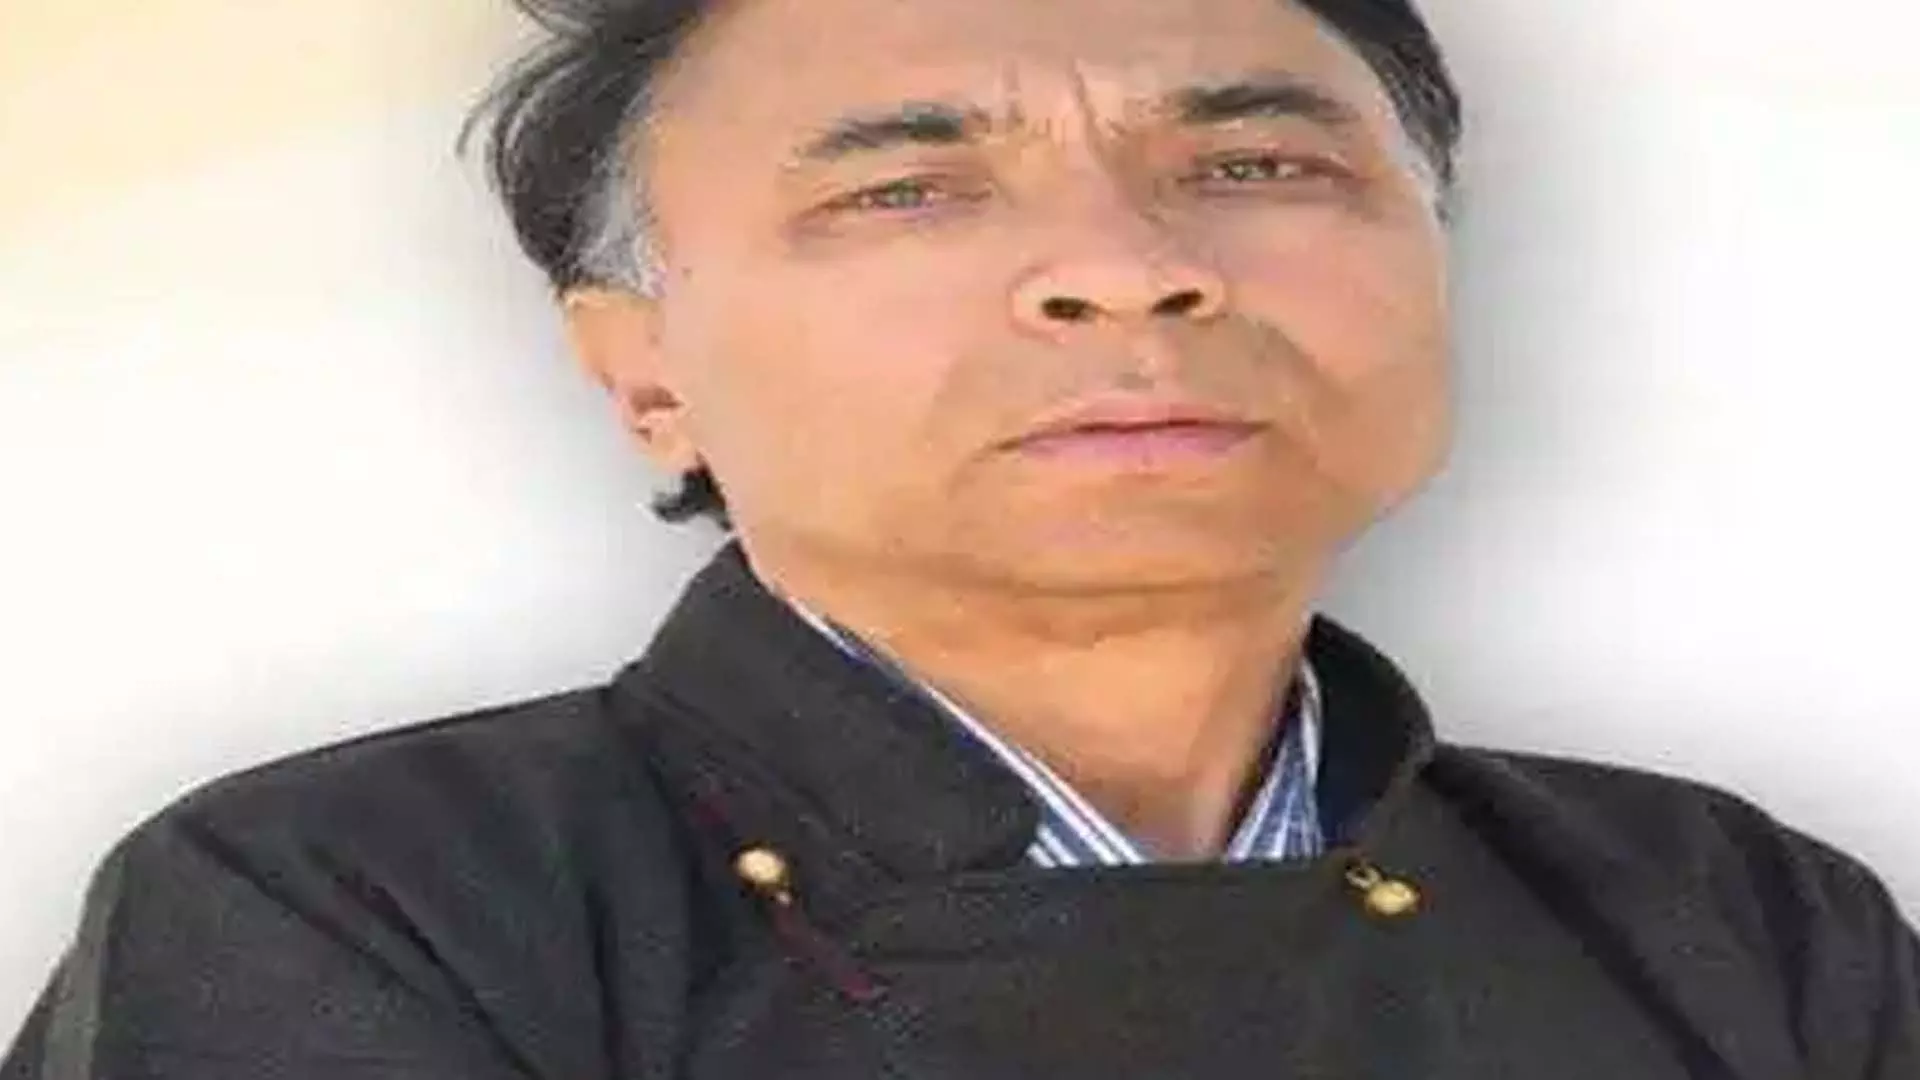 Srinagar: निर्दलीय हनीफा जन ने भाजपा से लद्दाख लोकसभा सीट छीनी